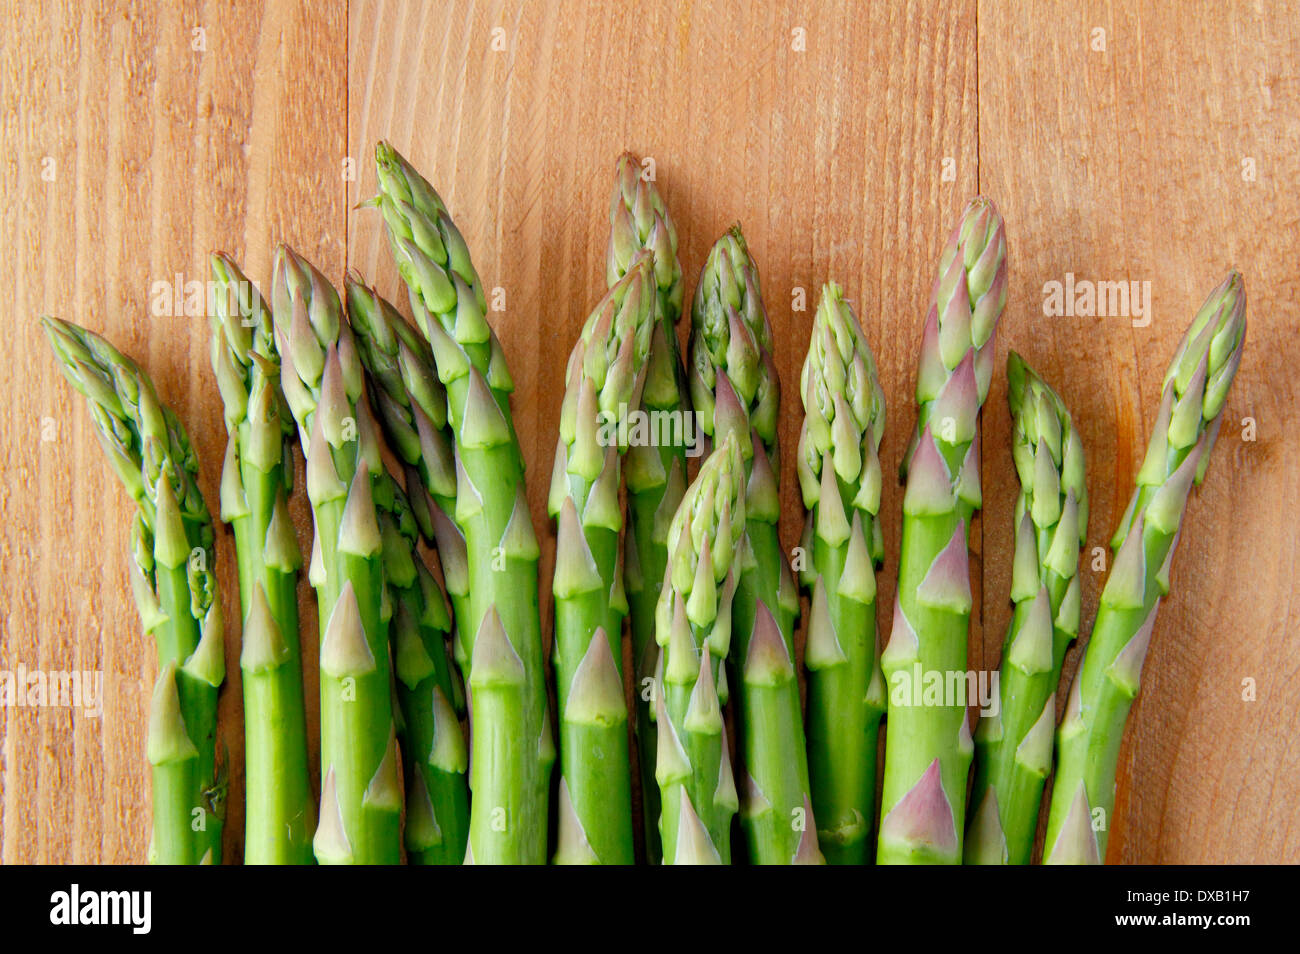 Fresh green asparagus tips/stalks against wooden background, UK Stock Photo